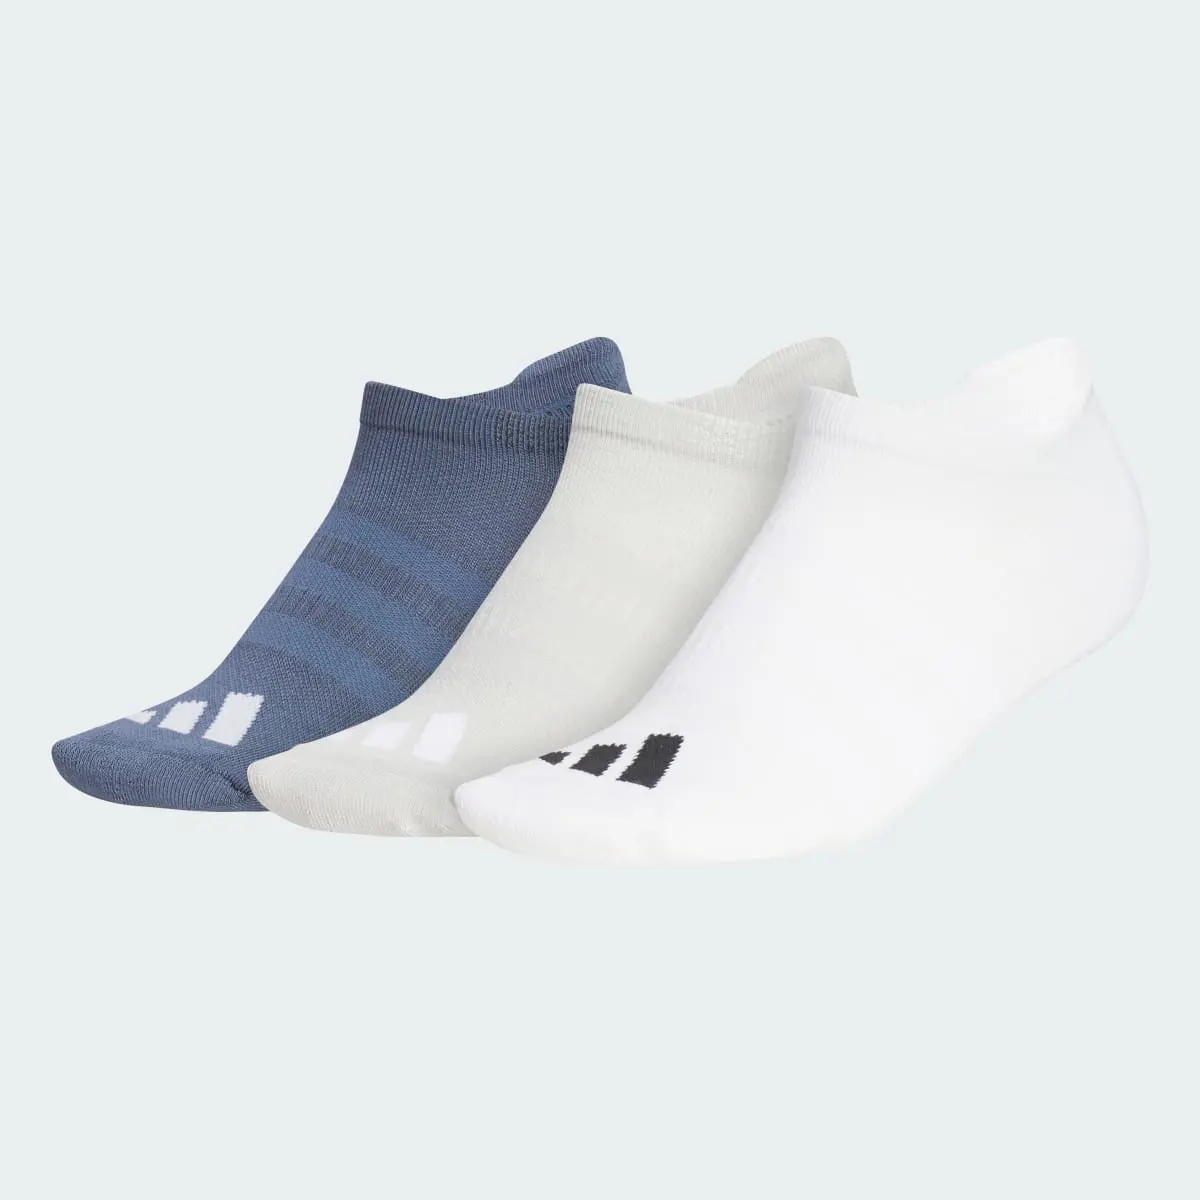 Adidas Meias Curtas Comfort – Mulher (3 pares). 2